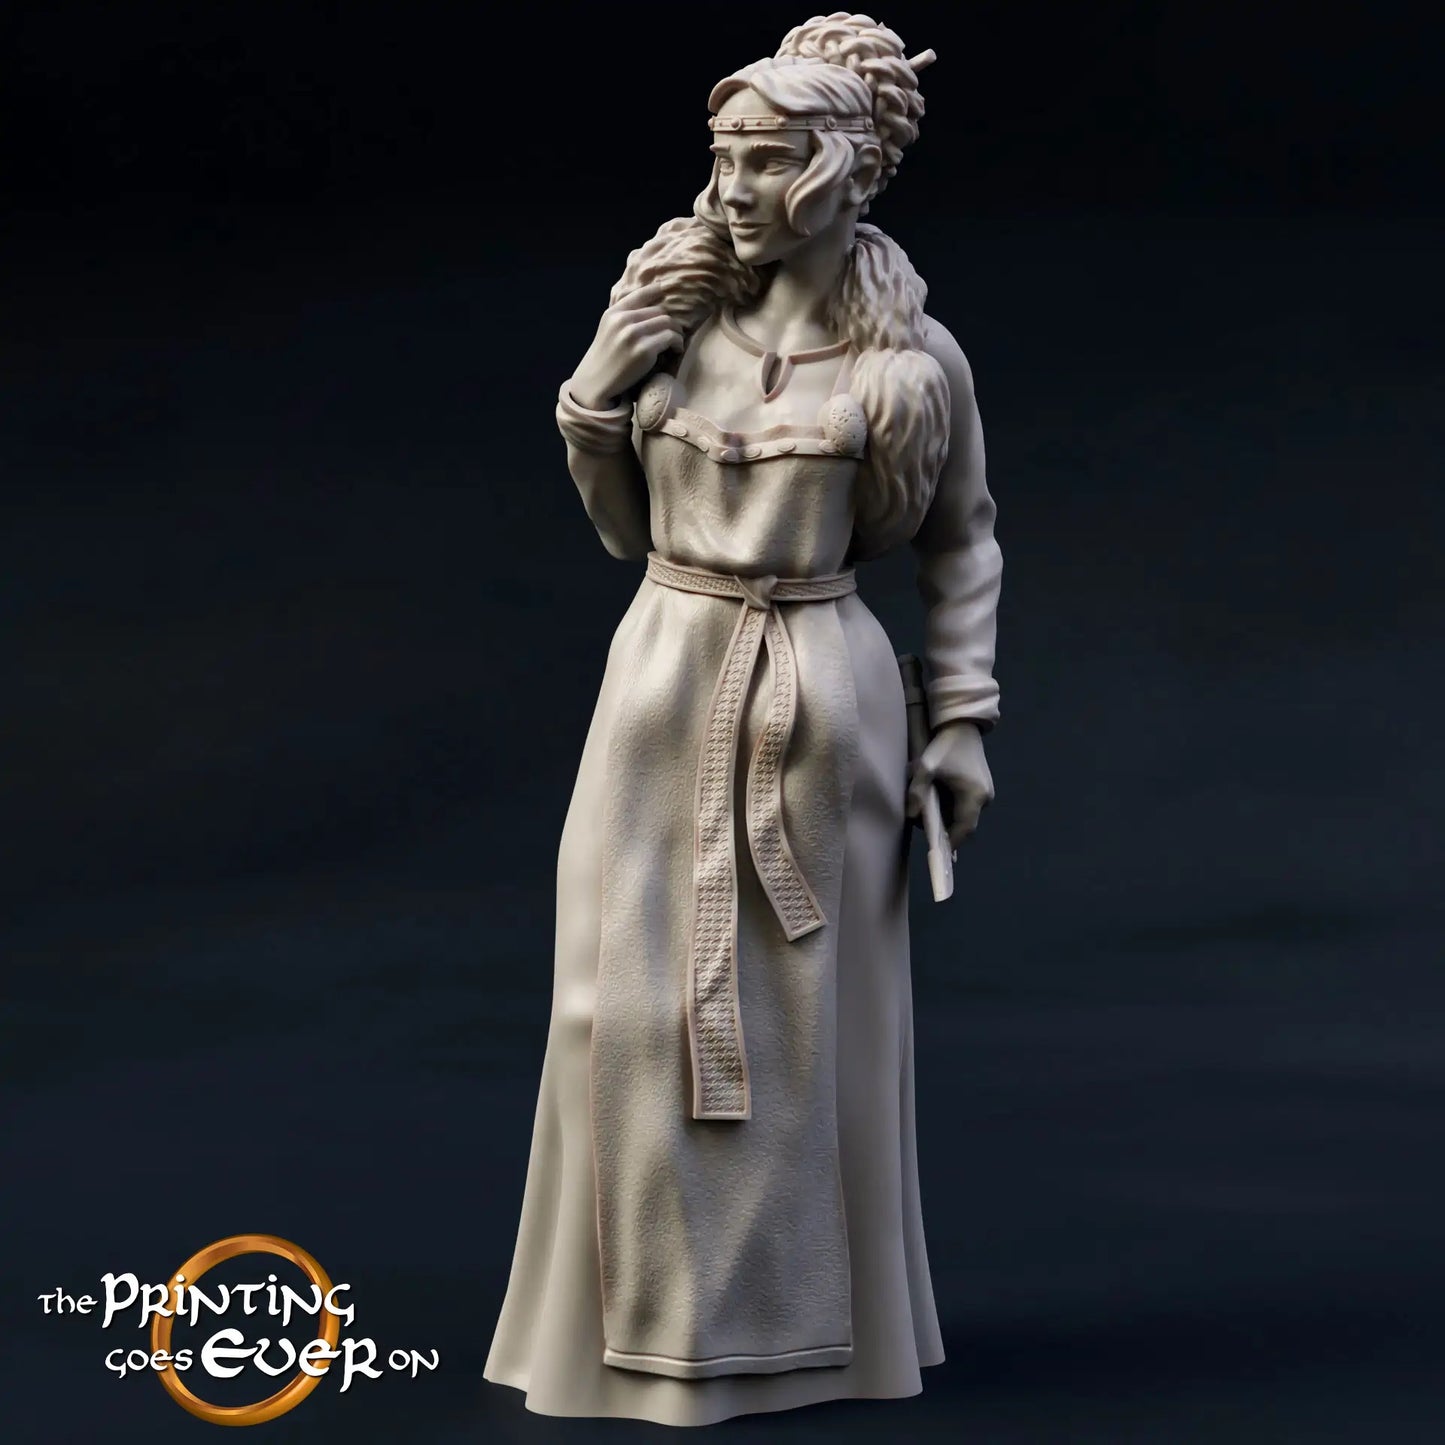 Produktfoto mittelalterliche historische Figur 75mm Scale The Printing Goes Ever On (TPGEO)  0: Mittelalterliche Figuren Prinzessin - 75mm Modelle - Königliche Familie